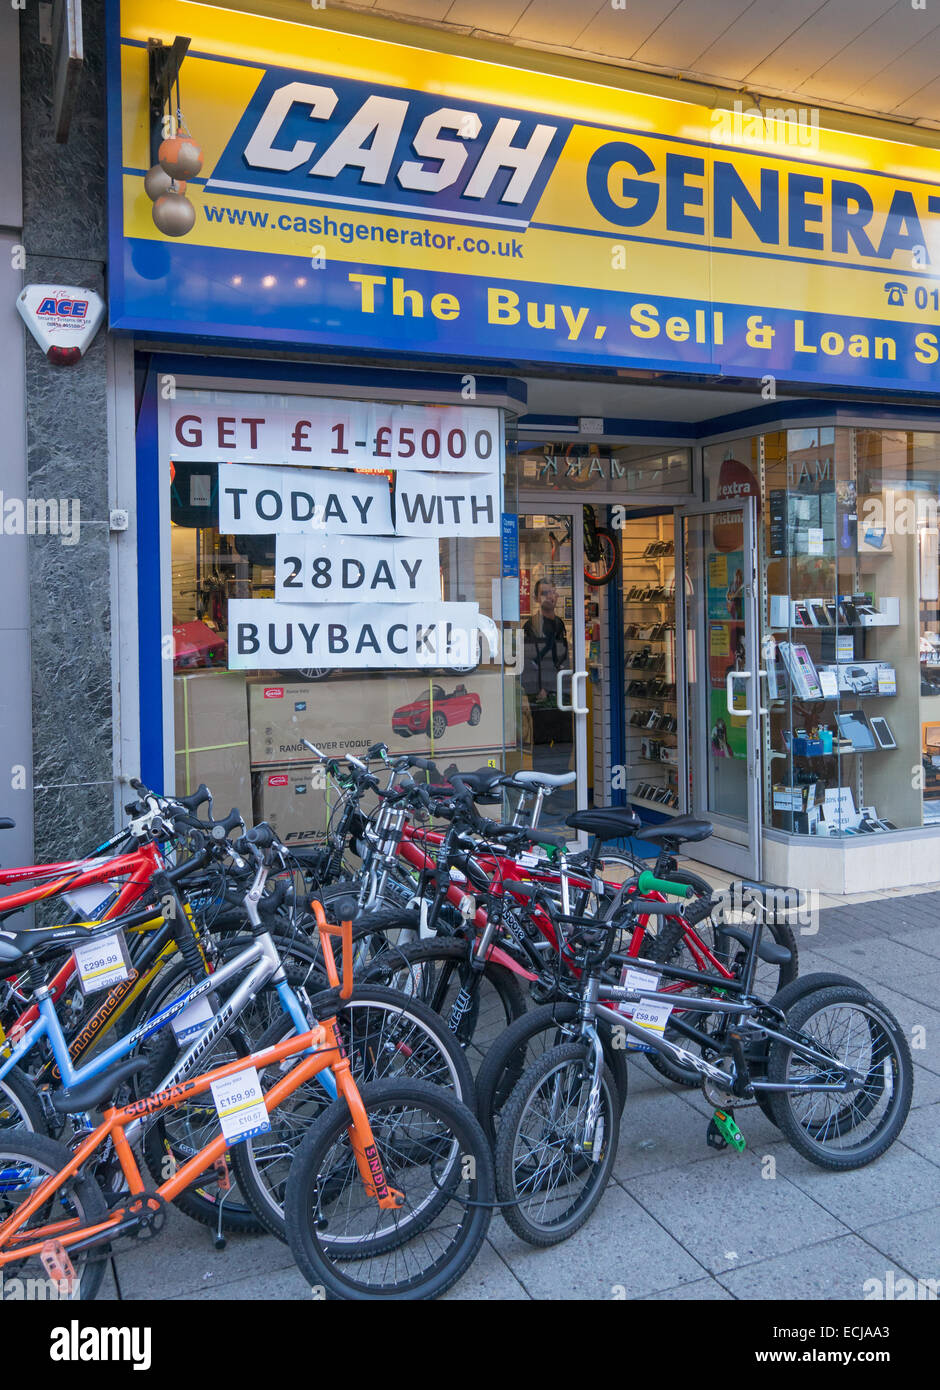 pawn shops that buy bikes